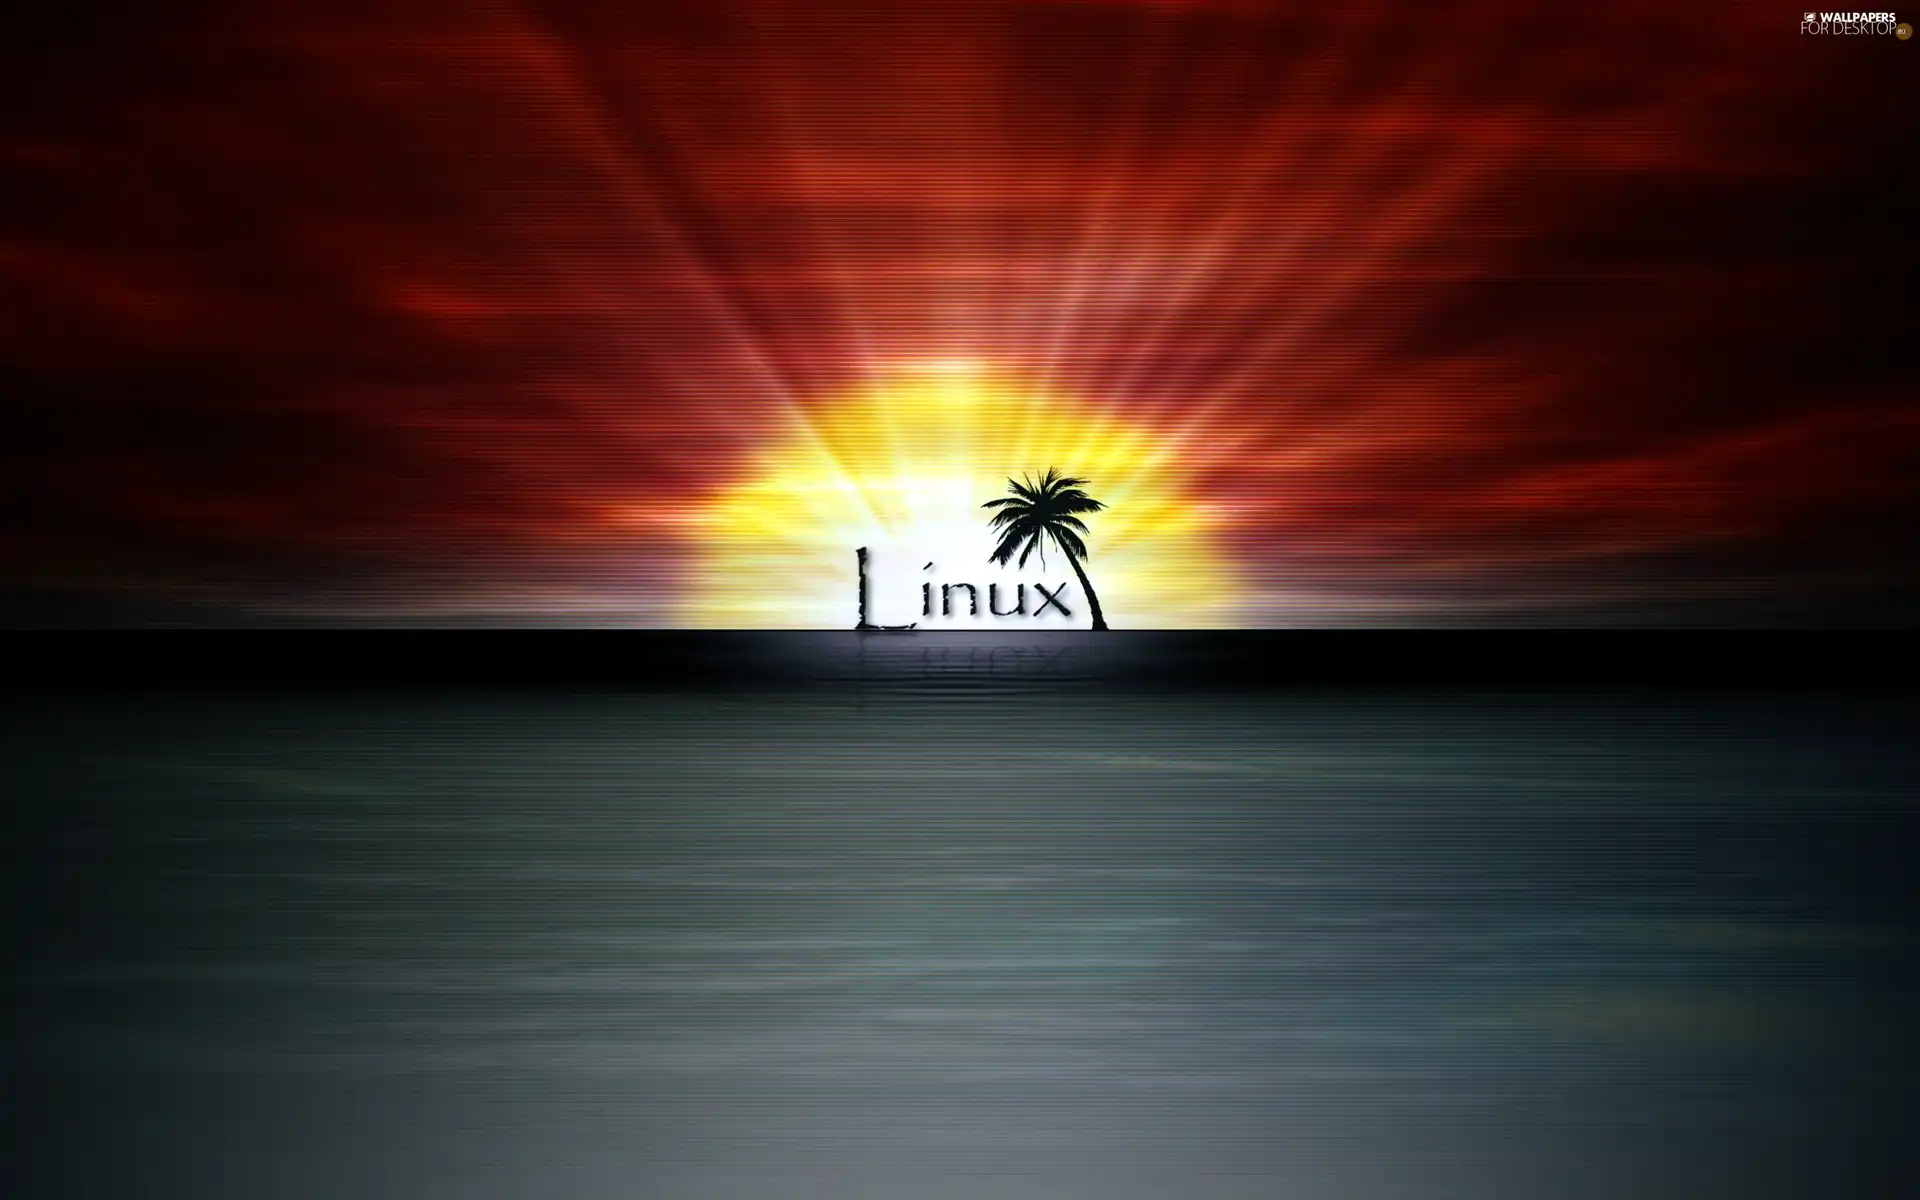 Linux, west, sun, sea